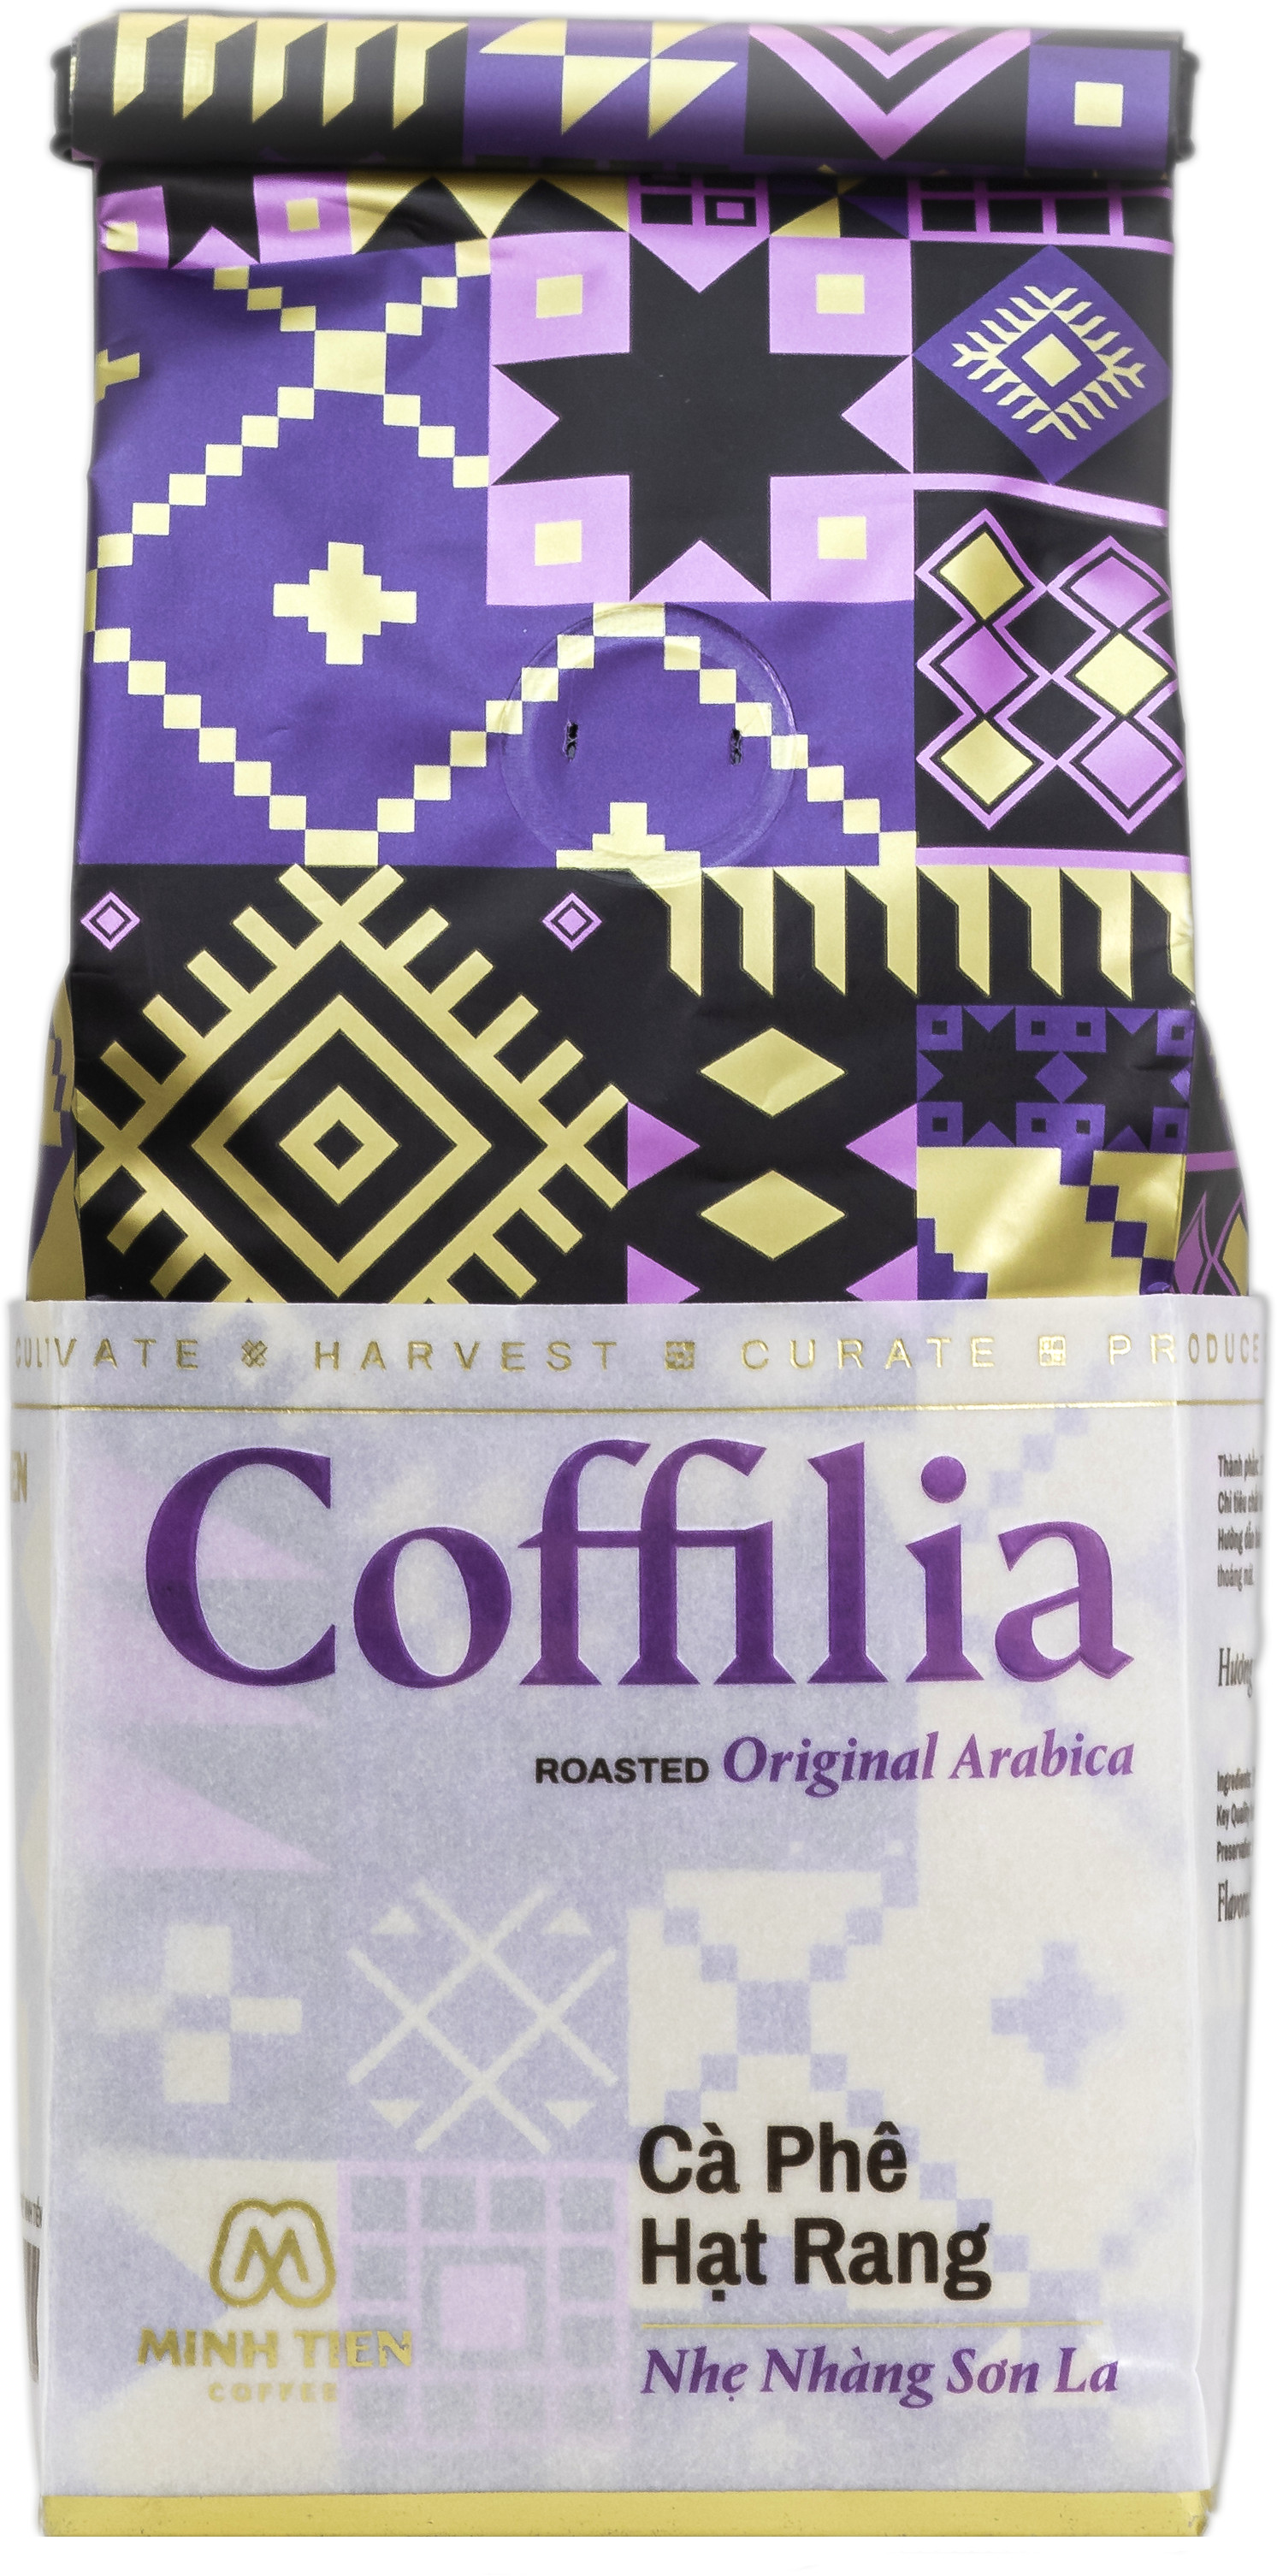 Cà phê hạt rang Coffilia - Nhẹ nhàng Sơn La gói 250g